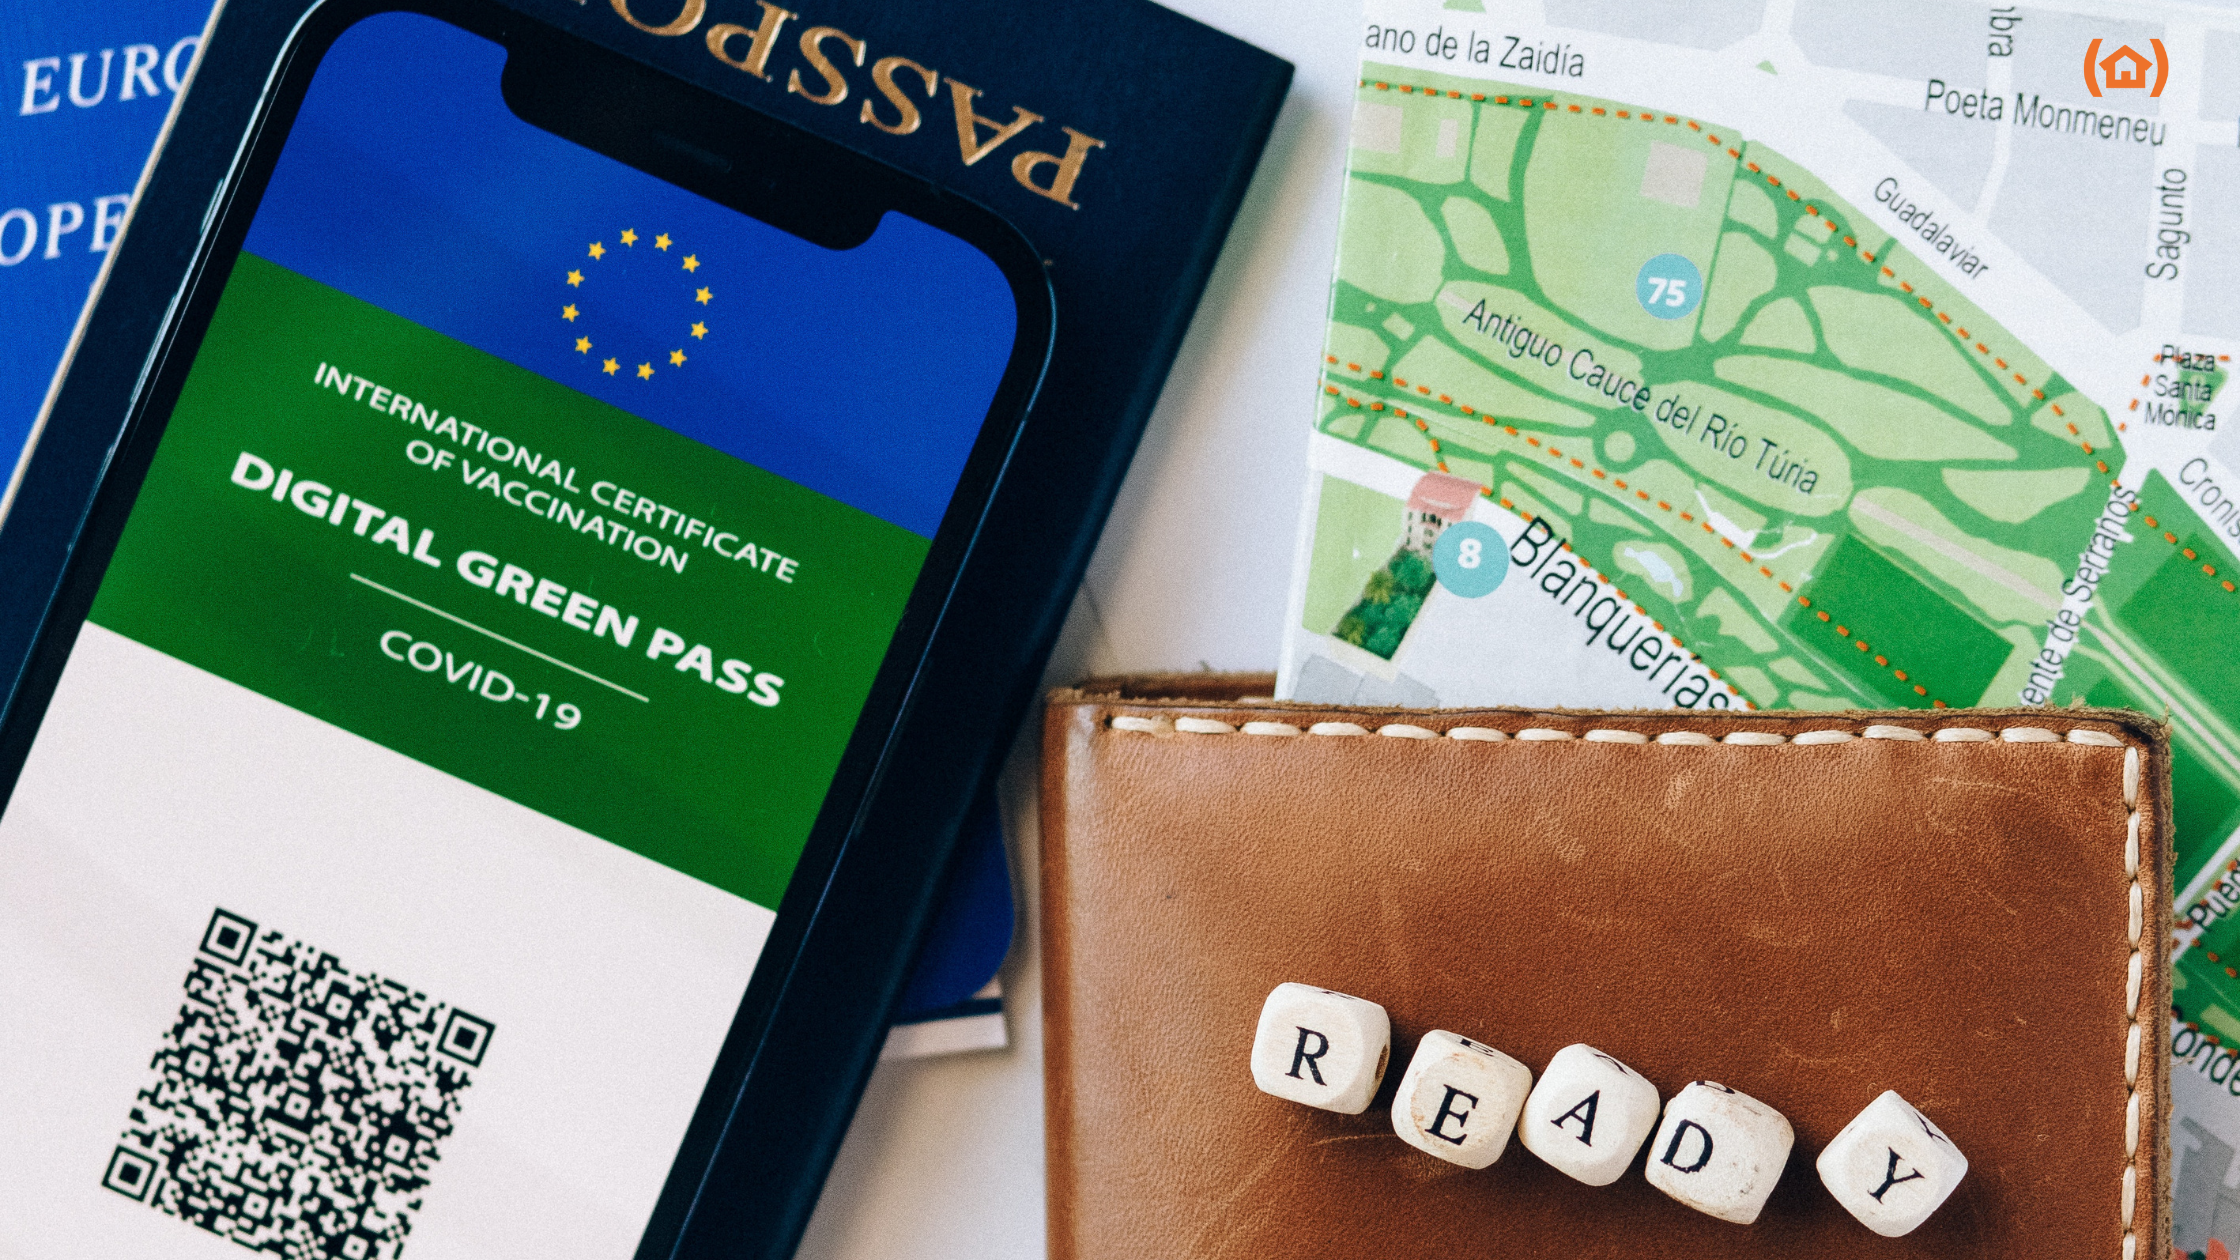 El pasaporte COVID digital de la UE es un documento gratuito en formato código QR digital o impreso para viajar sin restricciones por Europa. Descubre más aquí.